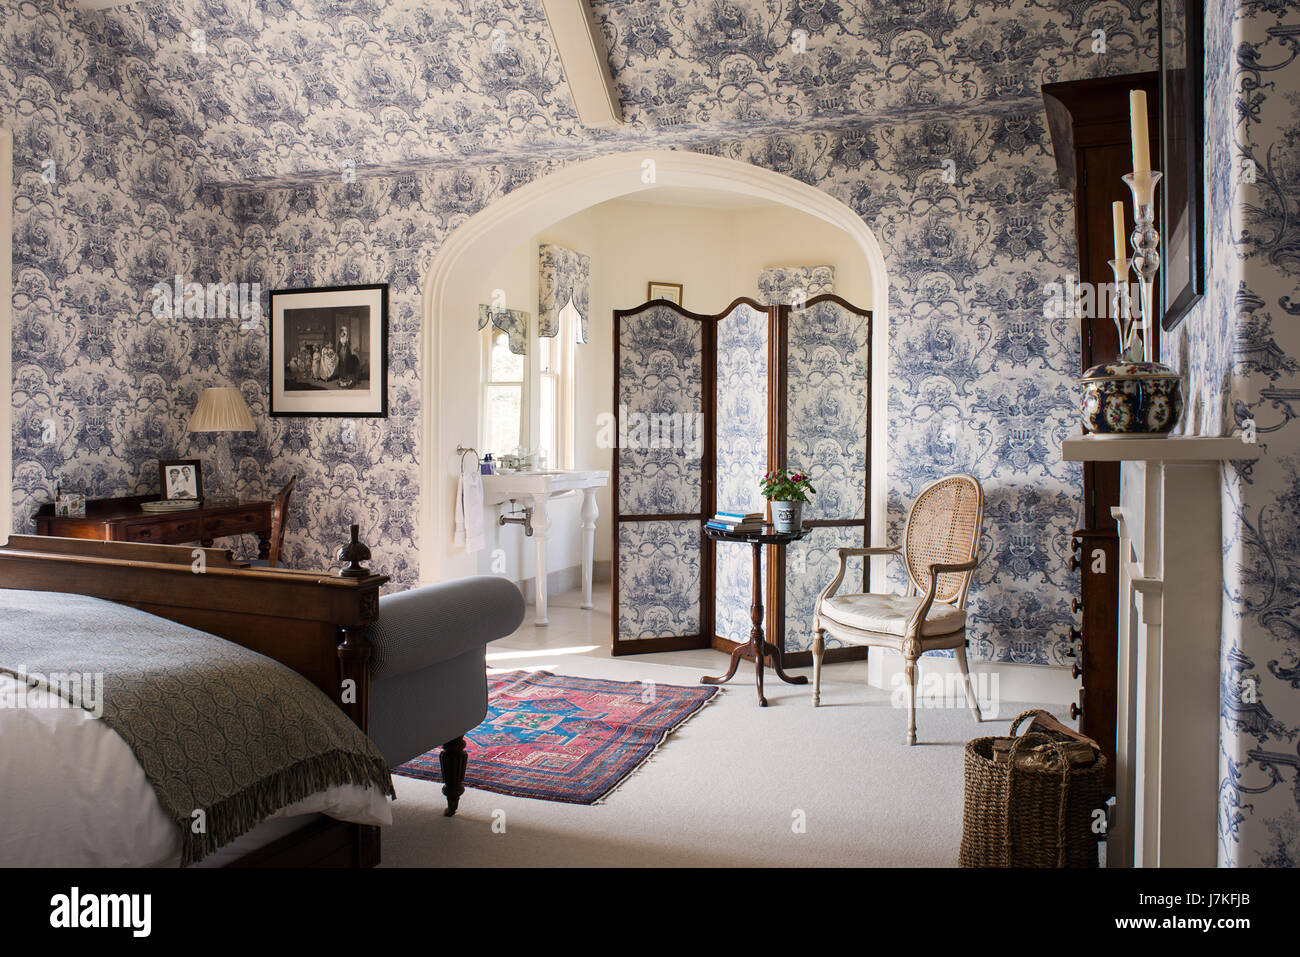 Gran dormitorio ensuite con toile de JOUY wallpaper y coincidencia de pantalla plegable. Foto de stock